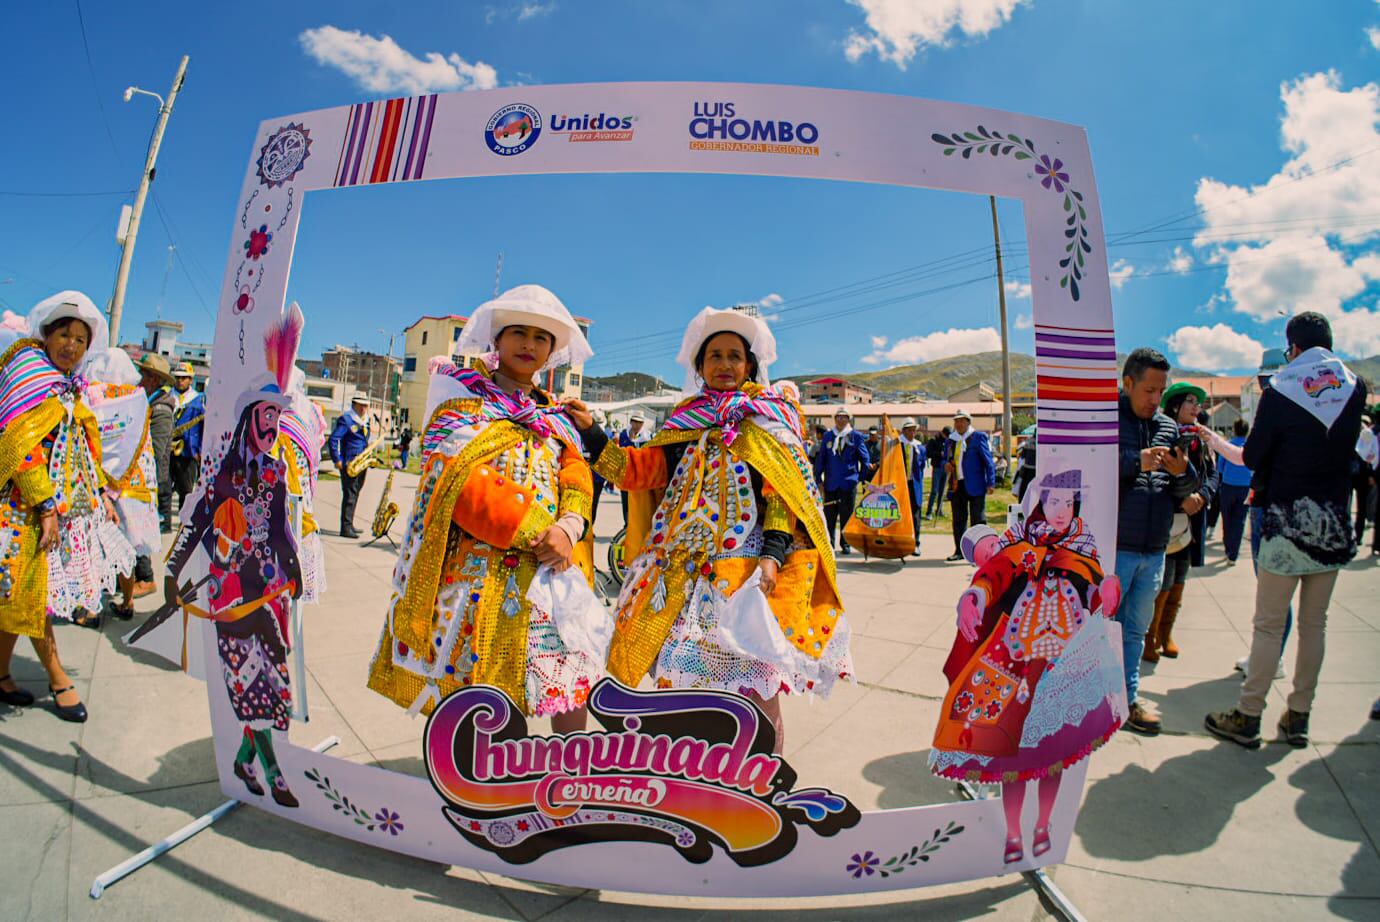 Se trata de una representación humorística de los bailes que trajeron los españoles, como el minué, la contradanza, la pavana o la gallarda y que se practica en los departamentos del centro del Perú. (Foto cortesía: Gobierno Regional de Pasco)